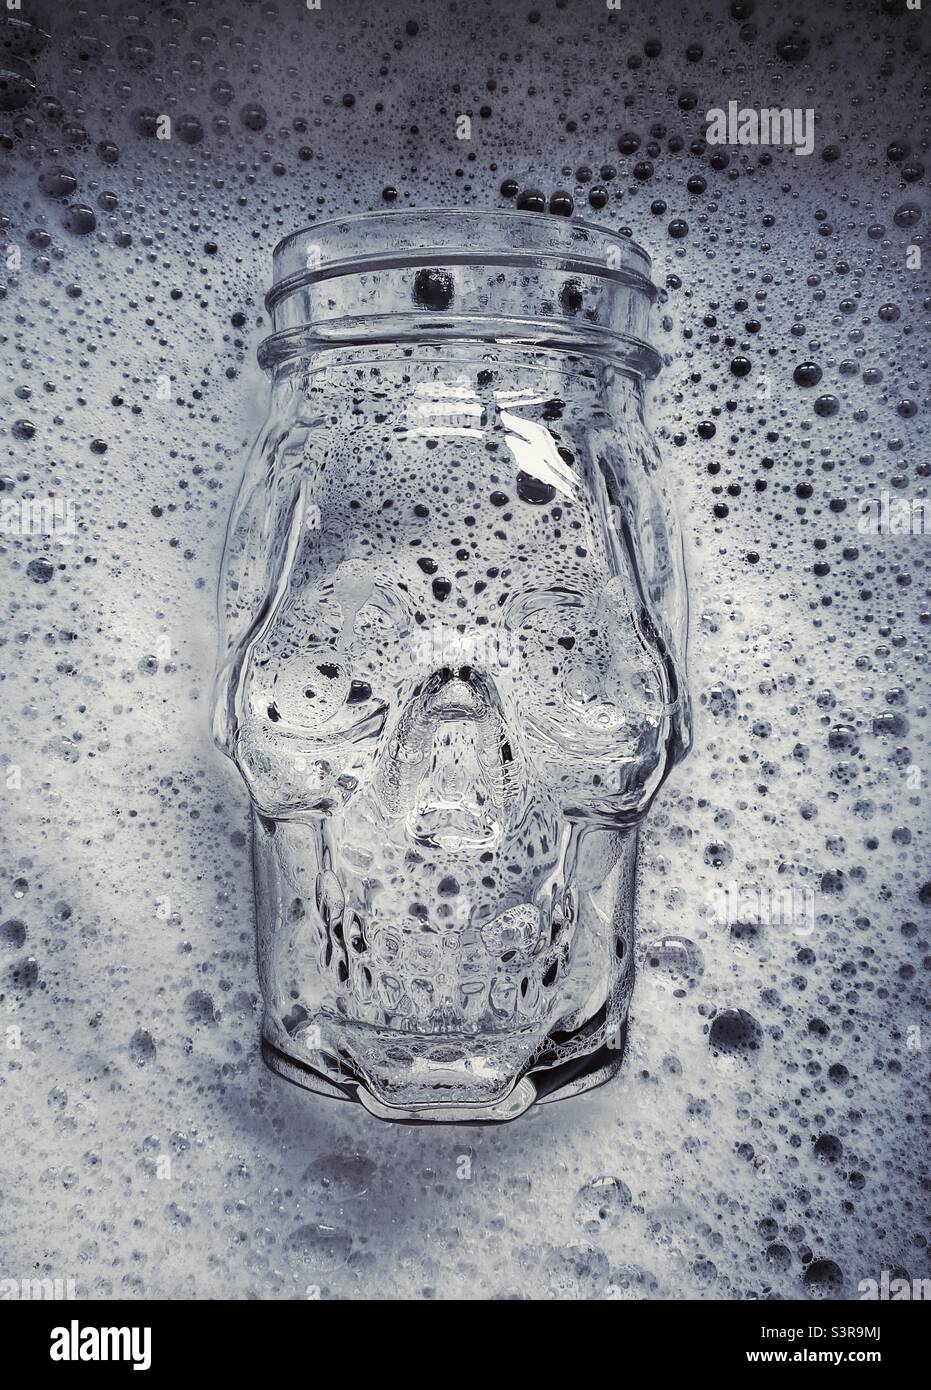 Une photo en gros plan d'un pot en verre en forme de crâne à moitié immergé dans un bol d'eau savonneuse. Noir et blanc Banque D'Images